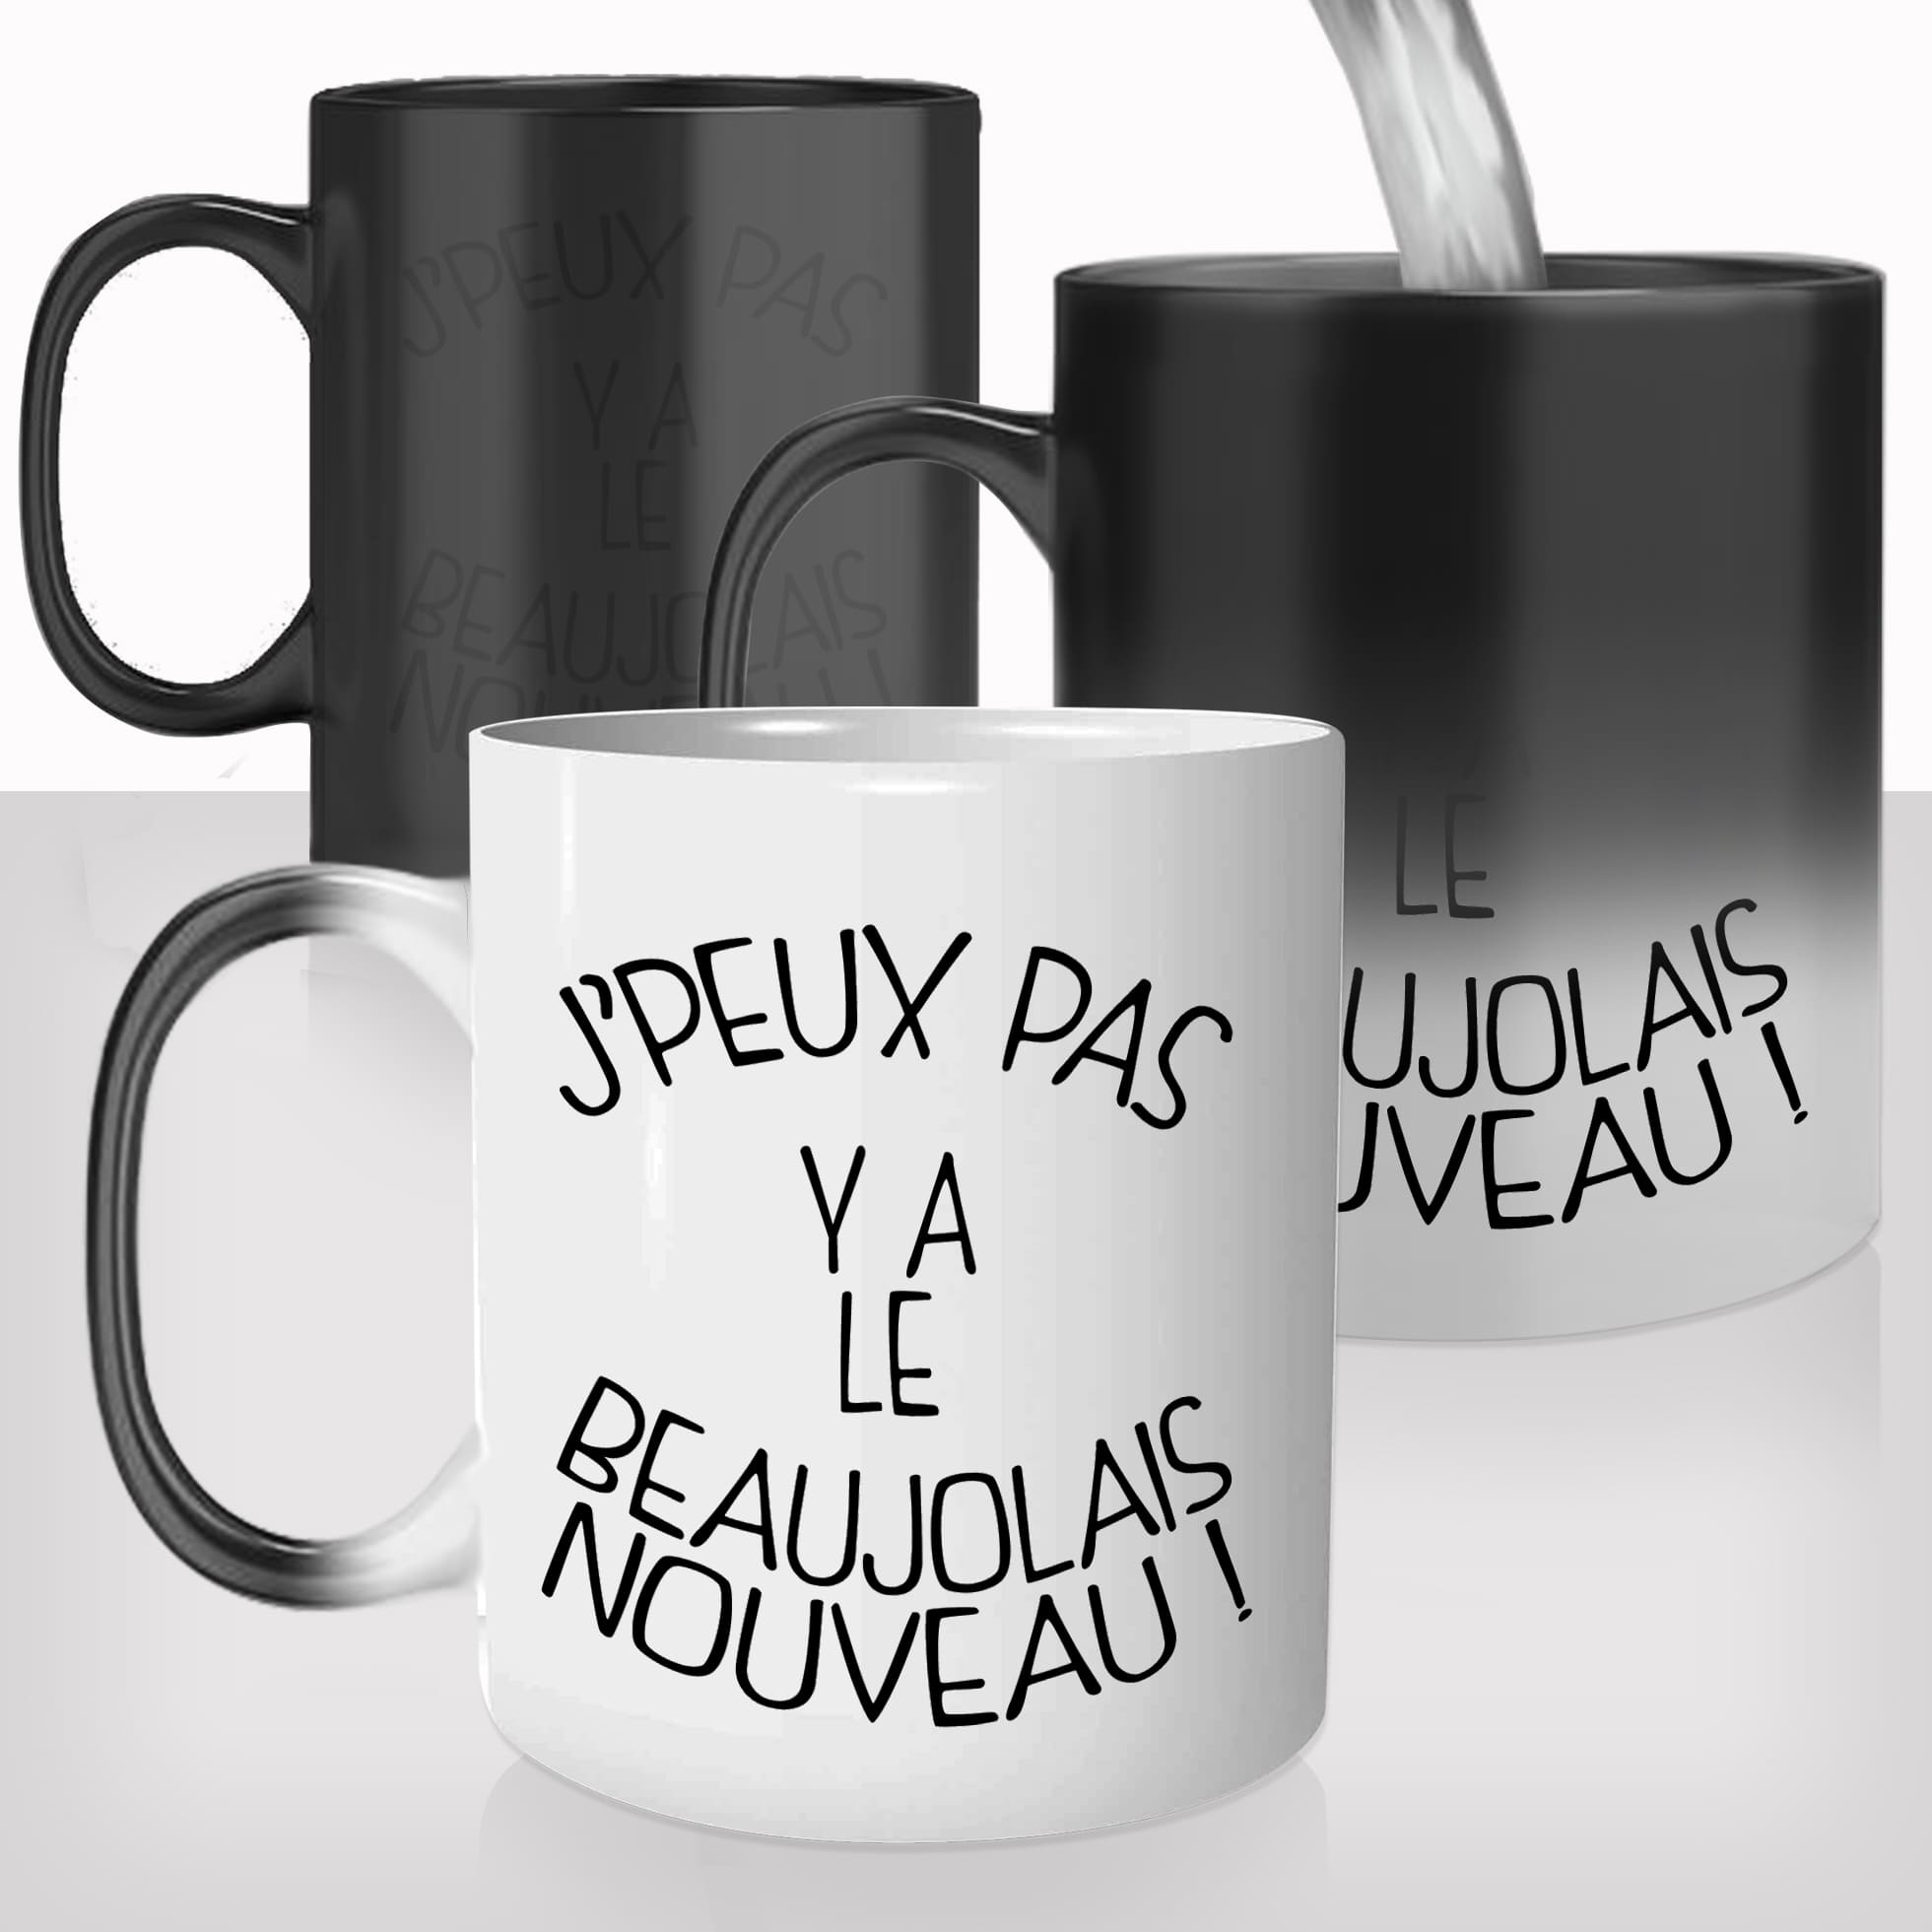 mug-magique-personnalisé-tasse-thermo-reactif-thermique-beaujolais-nouveau-je-peux-pas-vin-rouge-rosé-apéro-personnalisable-idée-cadeau